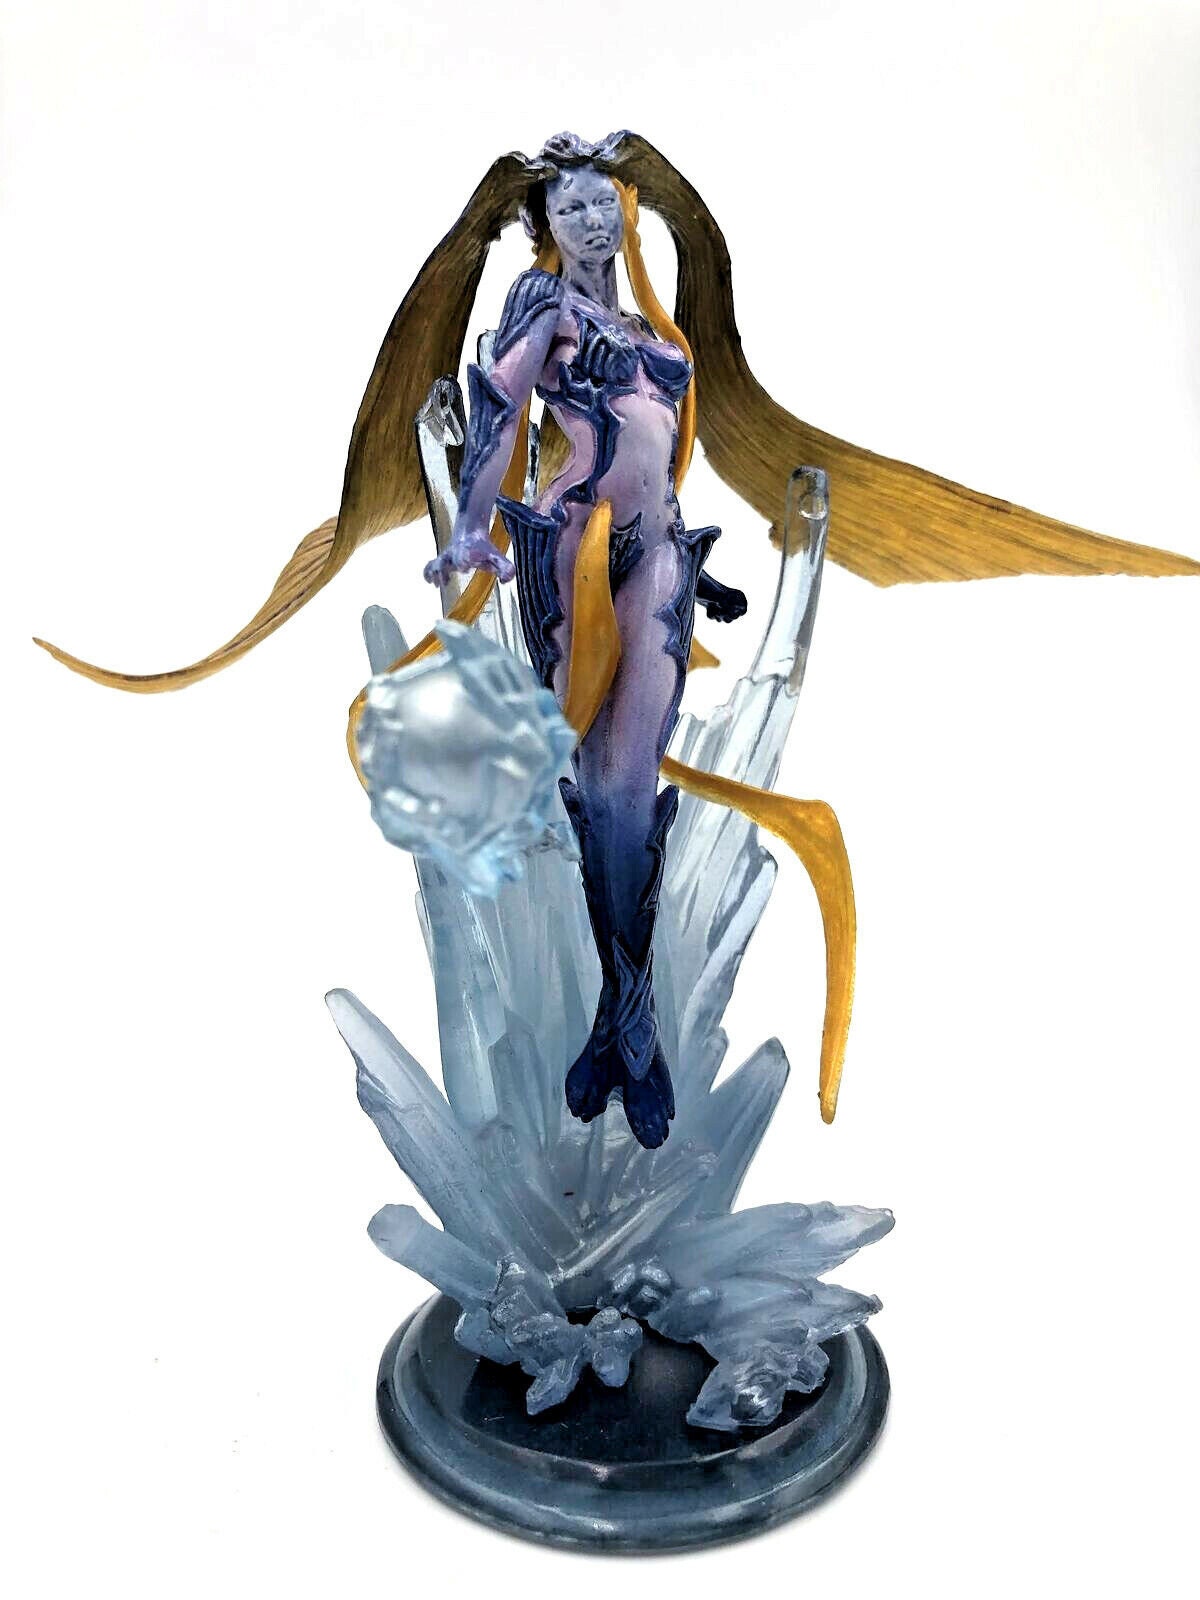 FINAL FANTASY XVI Diorama Figure - EIKON SHIVA